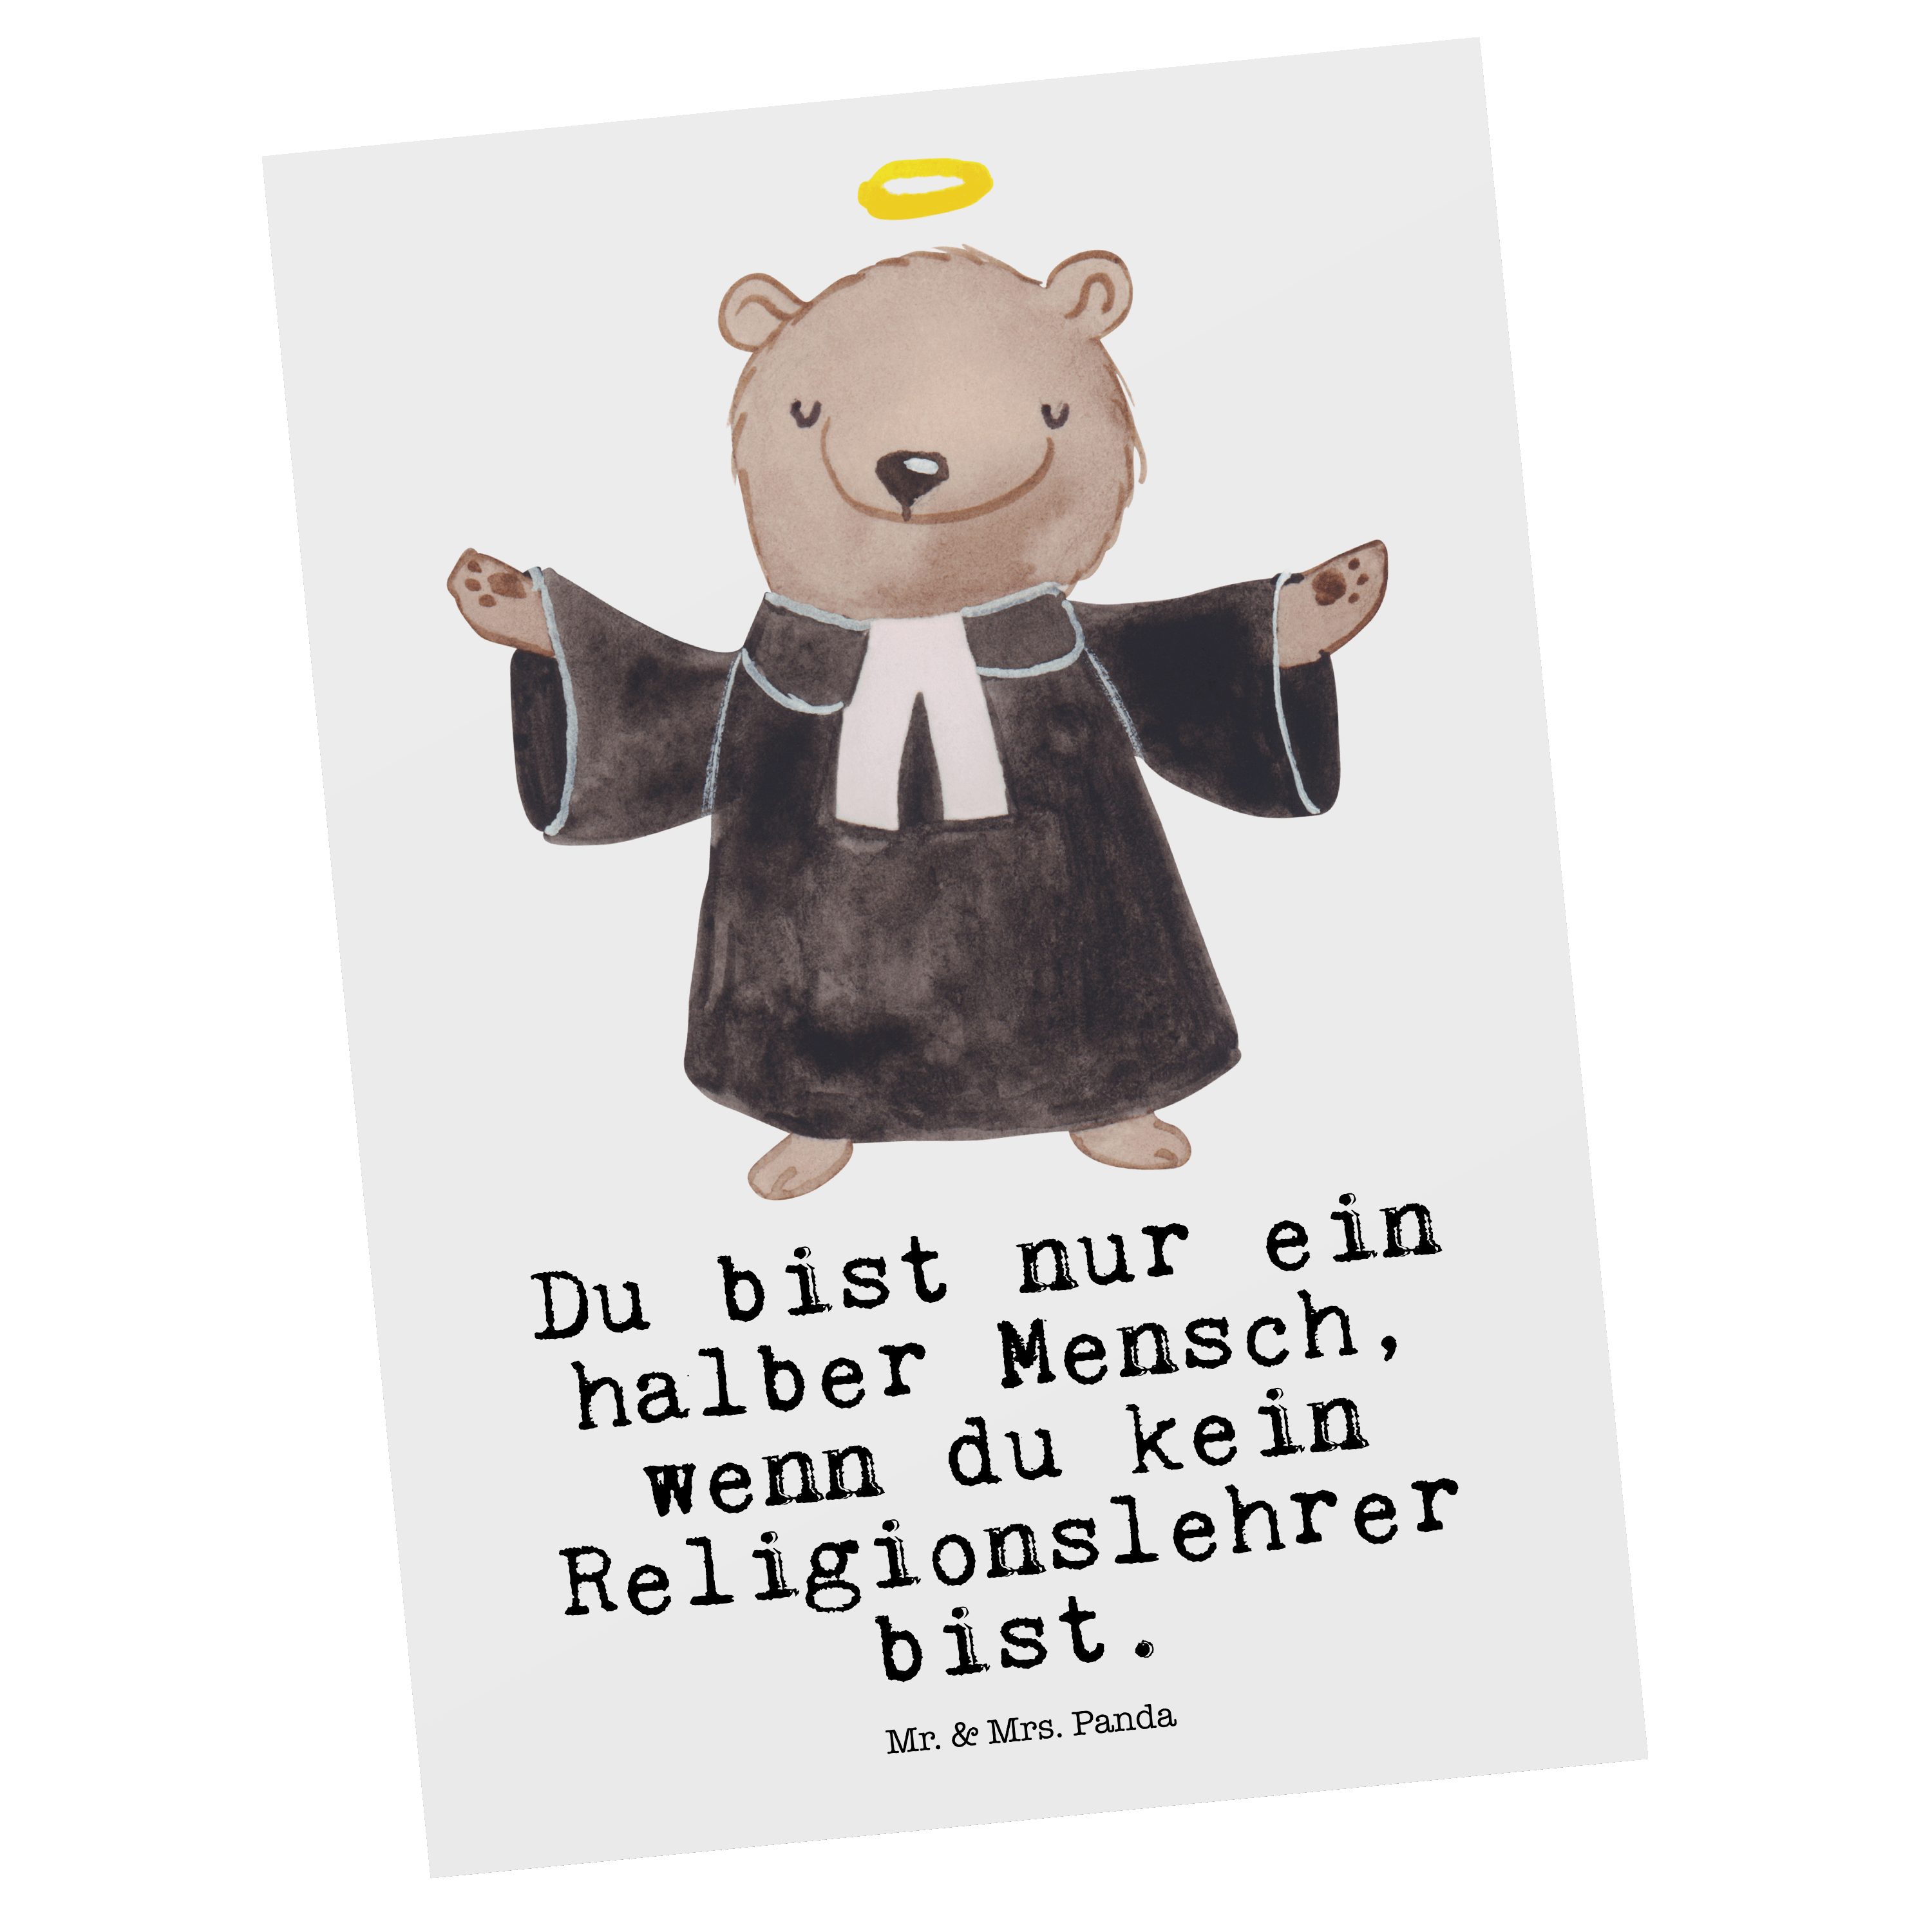 Mr. Herz Lehrer, Mrs. - - Firma, Weiß Postkarte & Geschenk, Panda Grund Reli Religionslehrer mit